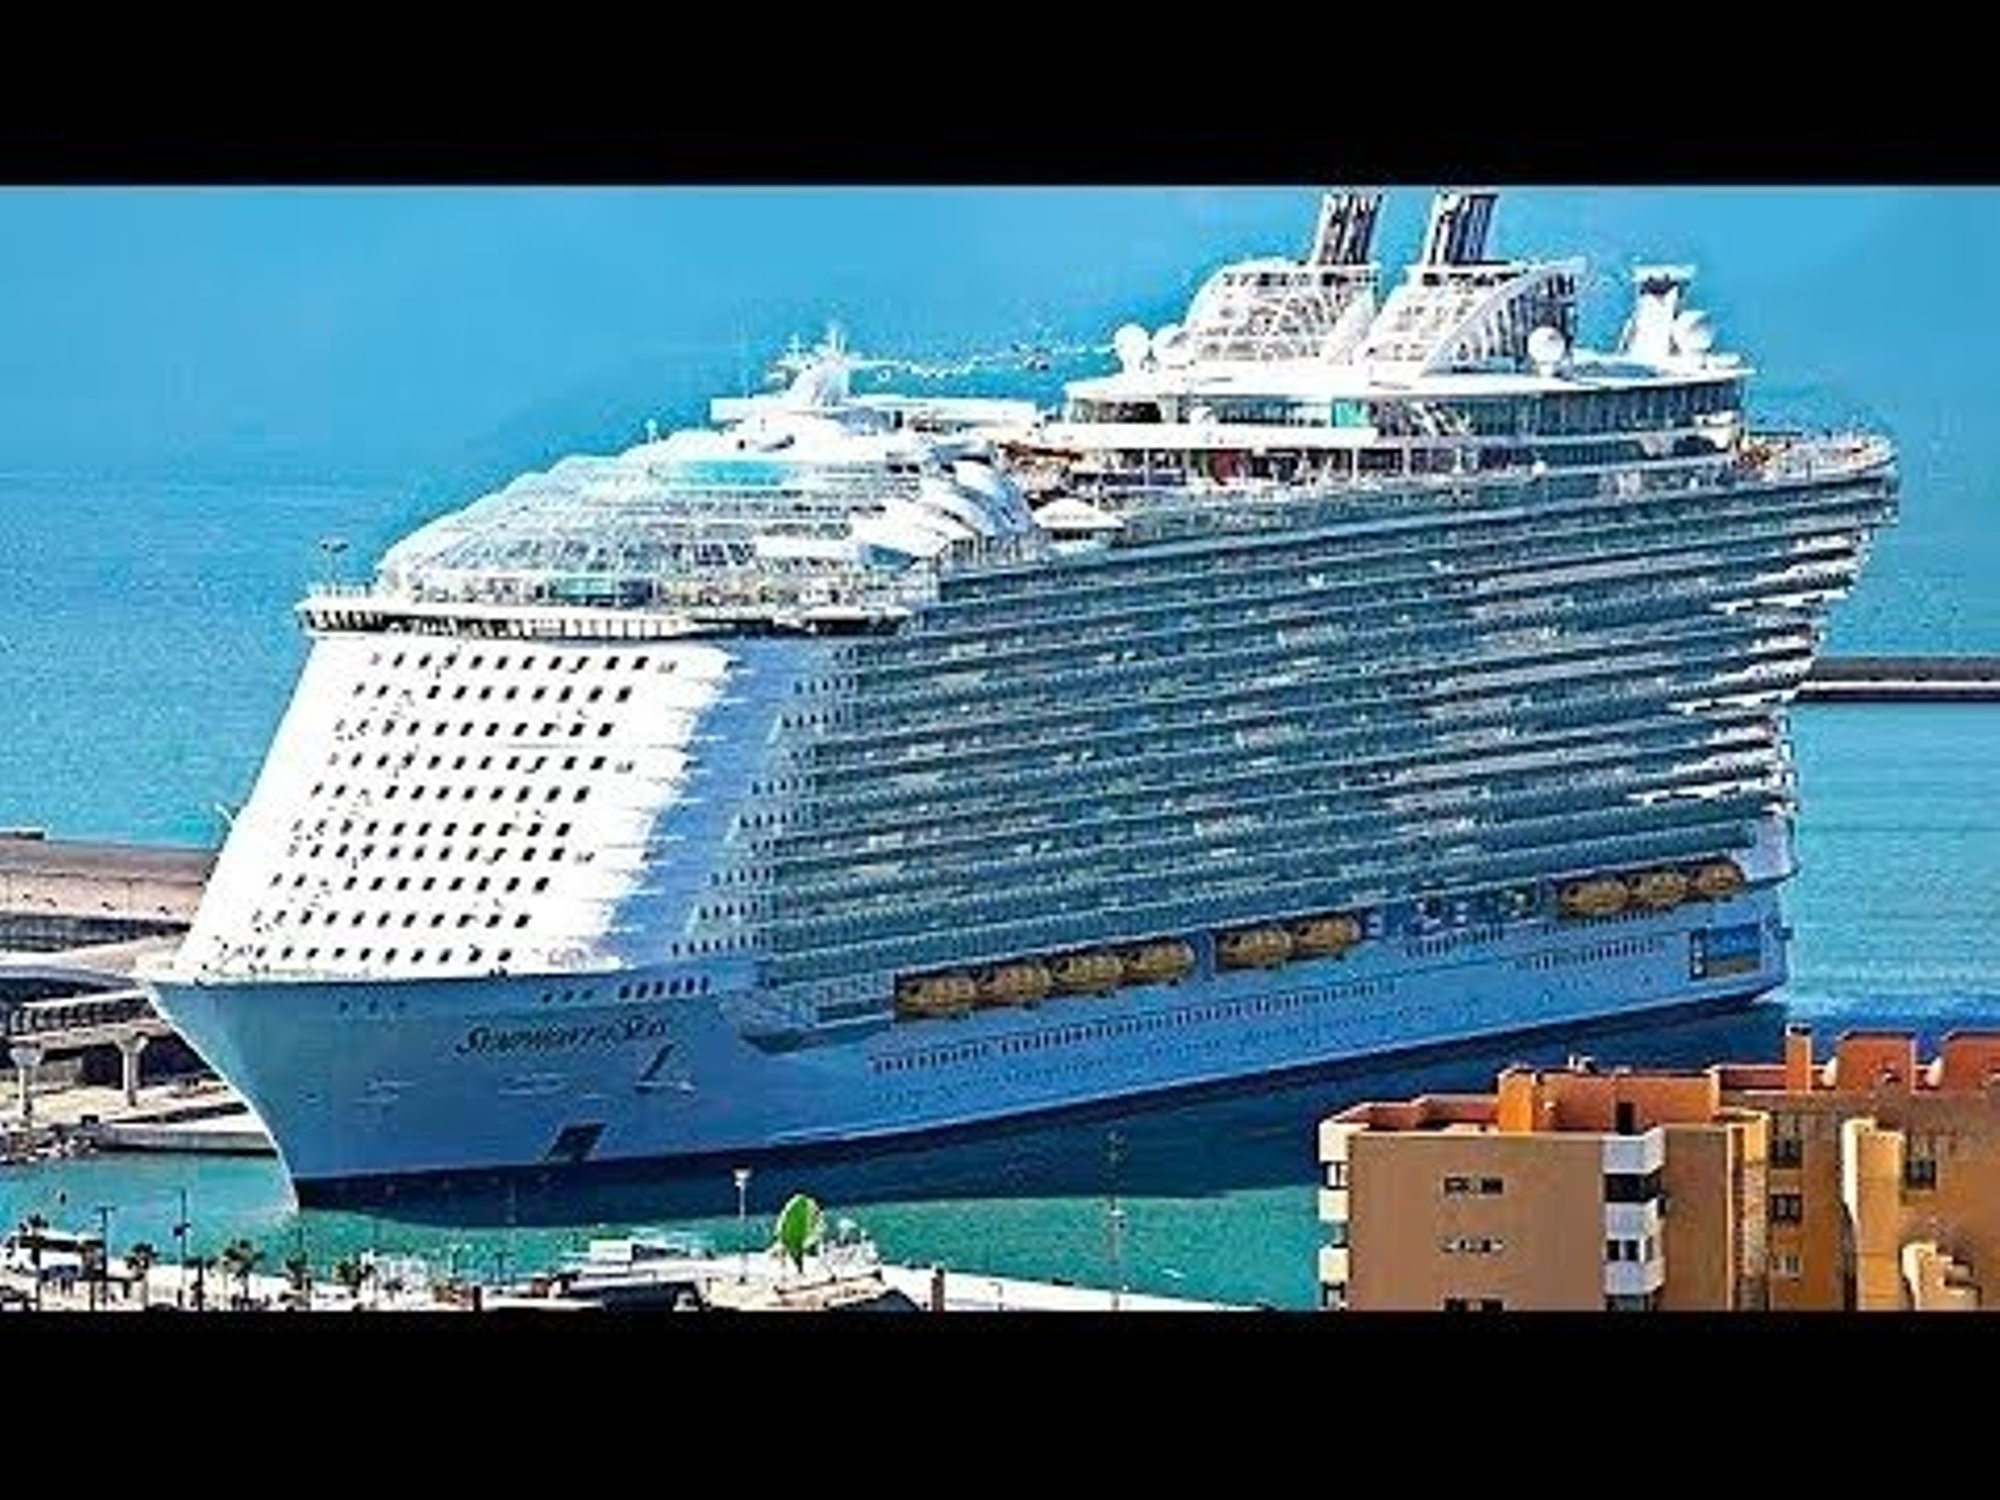 Какая мощность корабля. Оазис морей круизный лайнер. Самый большой пассажирский лайнер корабль в мире. Самый большой круизный лайнер в мире 2021. Капитан Оазис морей.